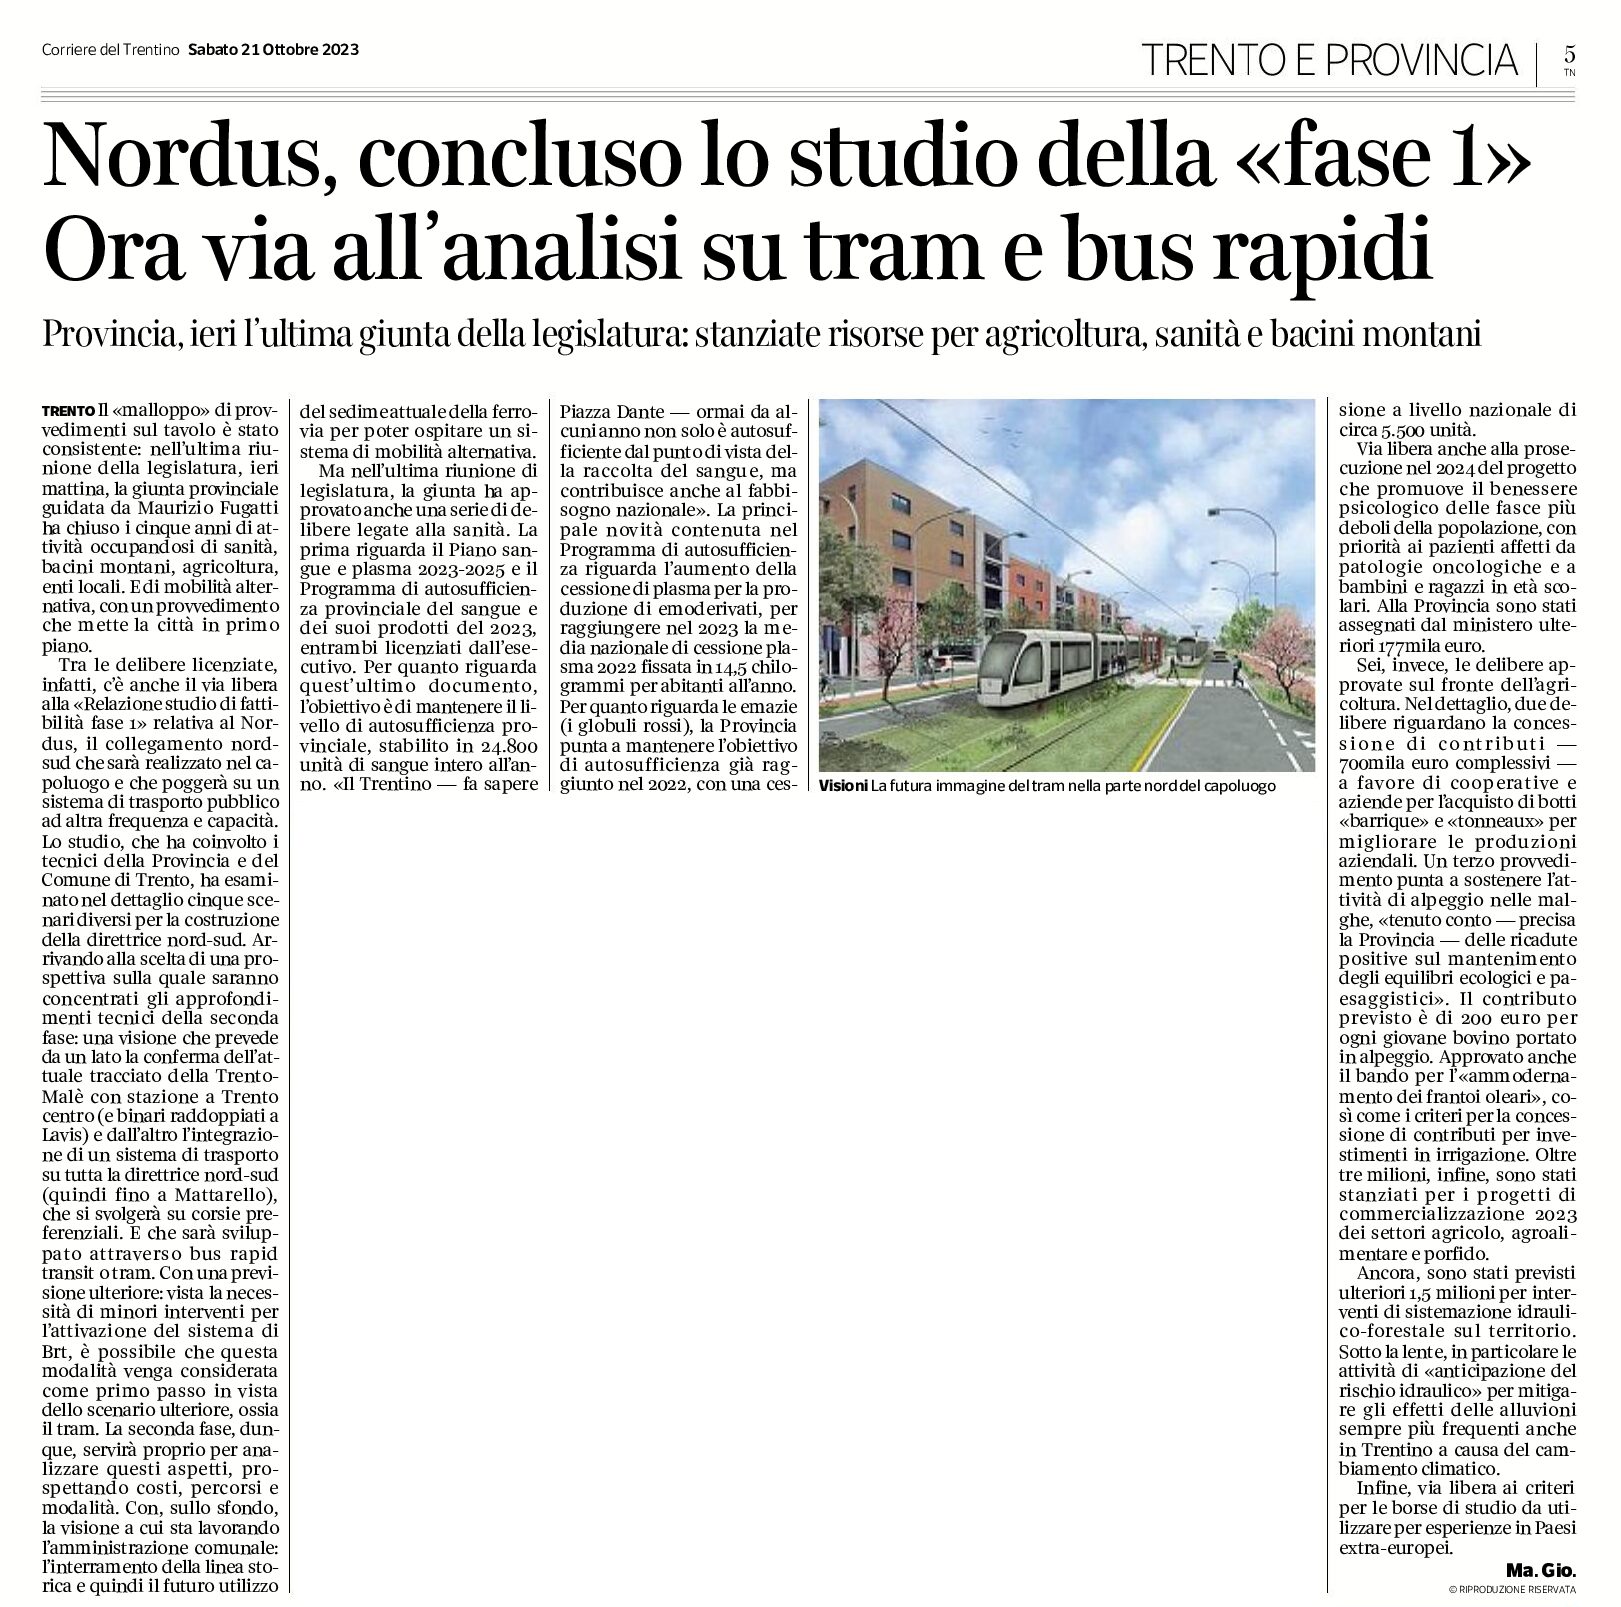 Trento, Nordus: concluso lo studio della “fase 1”. Ora via all’analisi su tram e bus rapidi